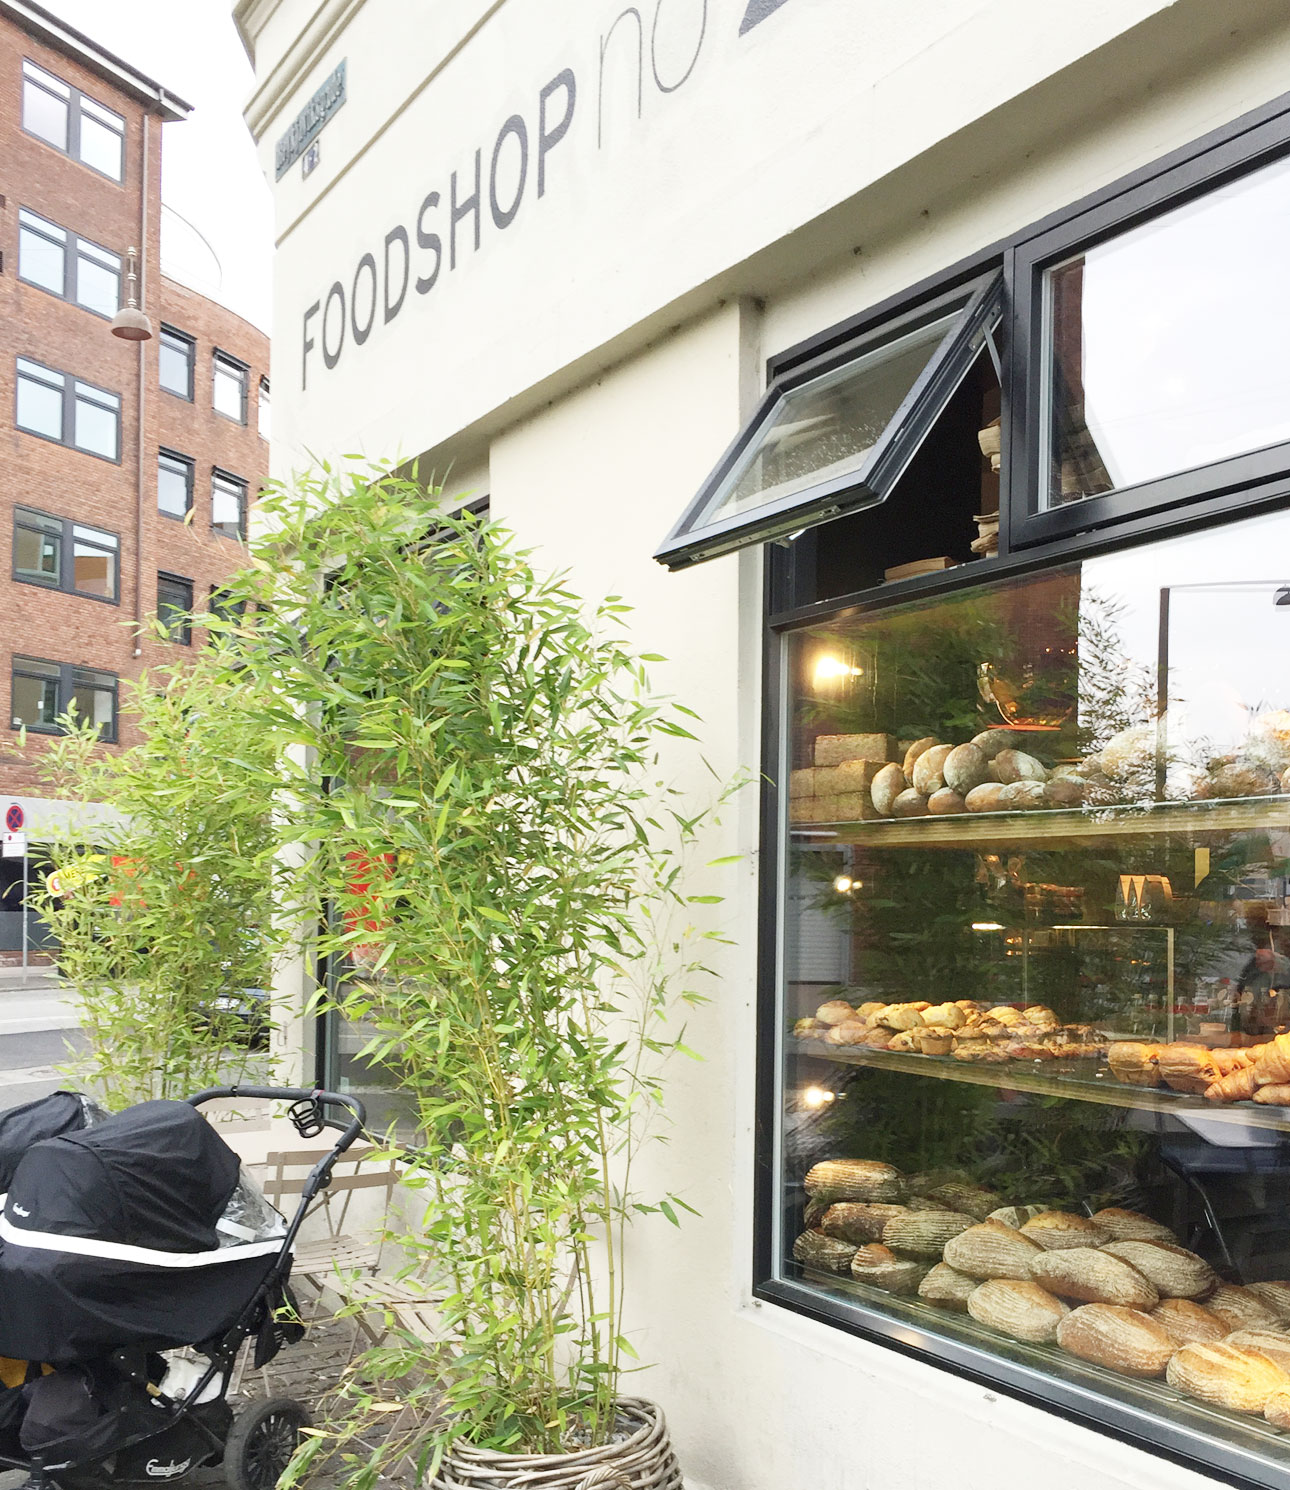 Kopenhagen hotspots foodshop 26 bakker